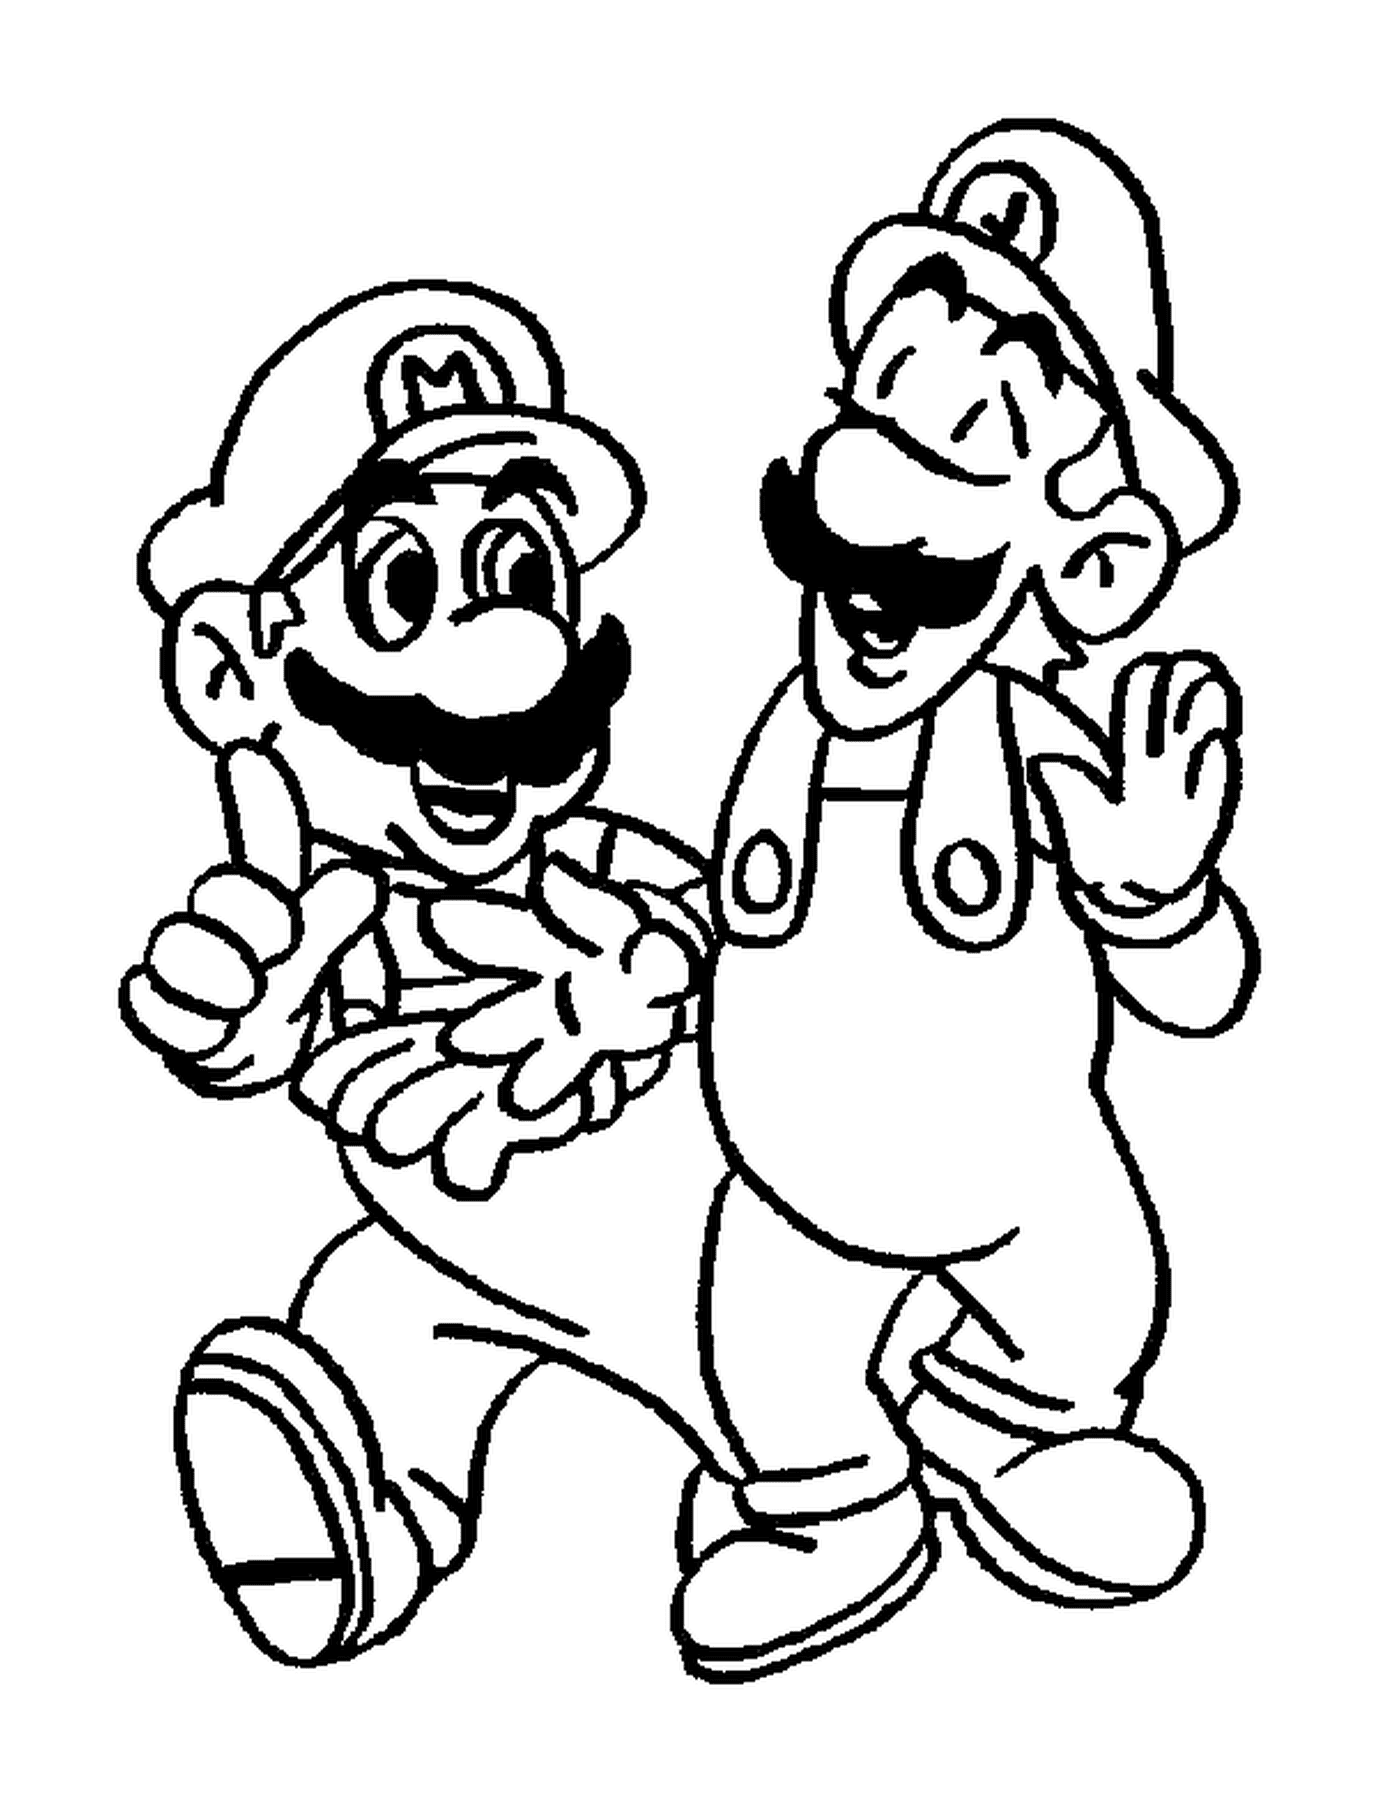 Luigi et Mario